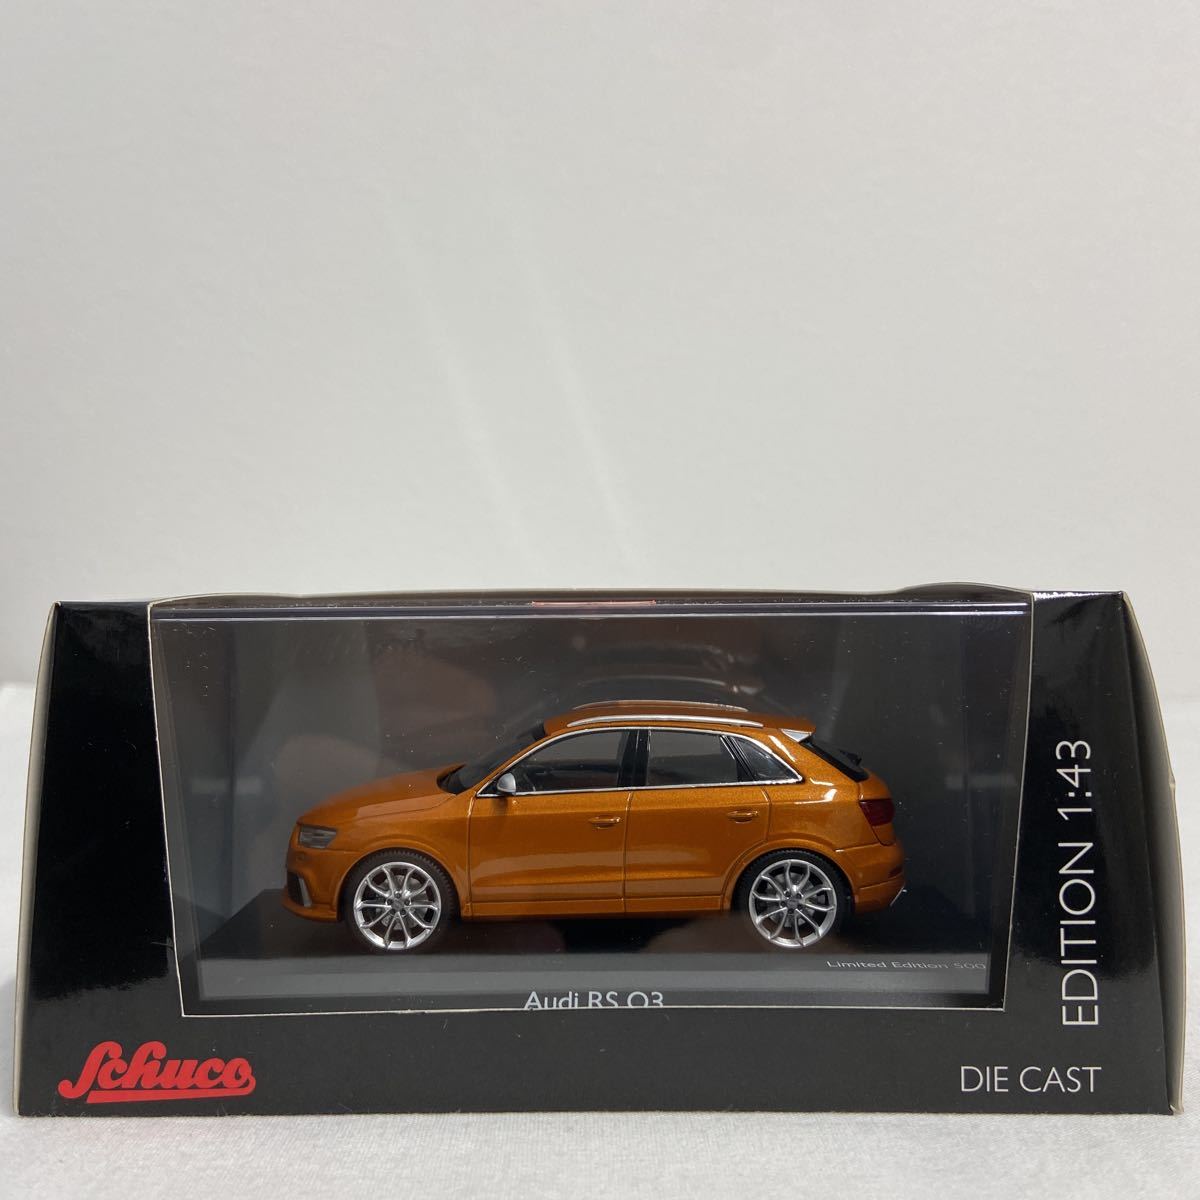 Schuco Limited Edition 1/43 Audi RS Q3 samoa orange シュコー アウディ サモアオレンジ 限定 ミニカー モデルカー_画像2